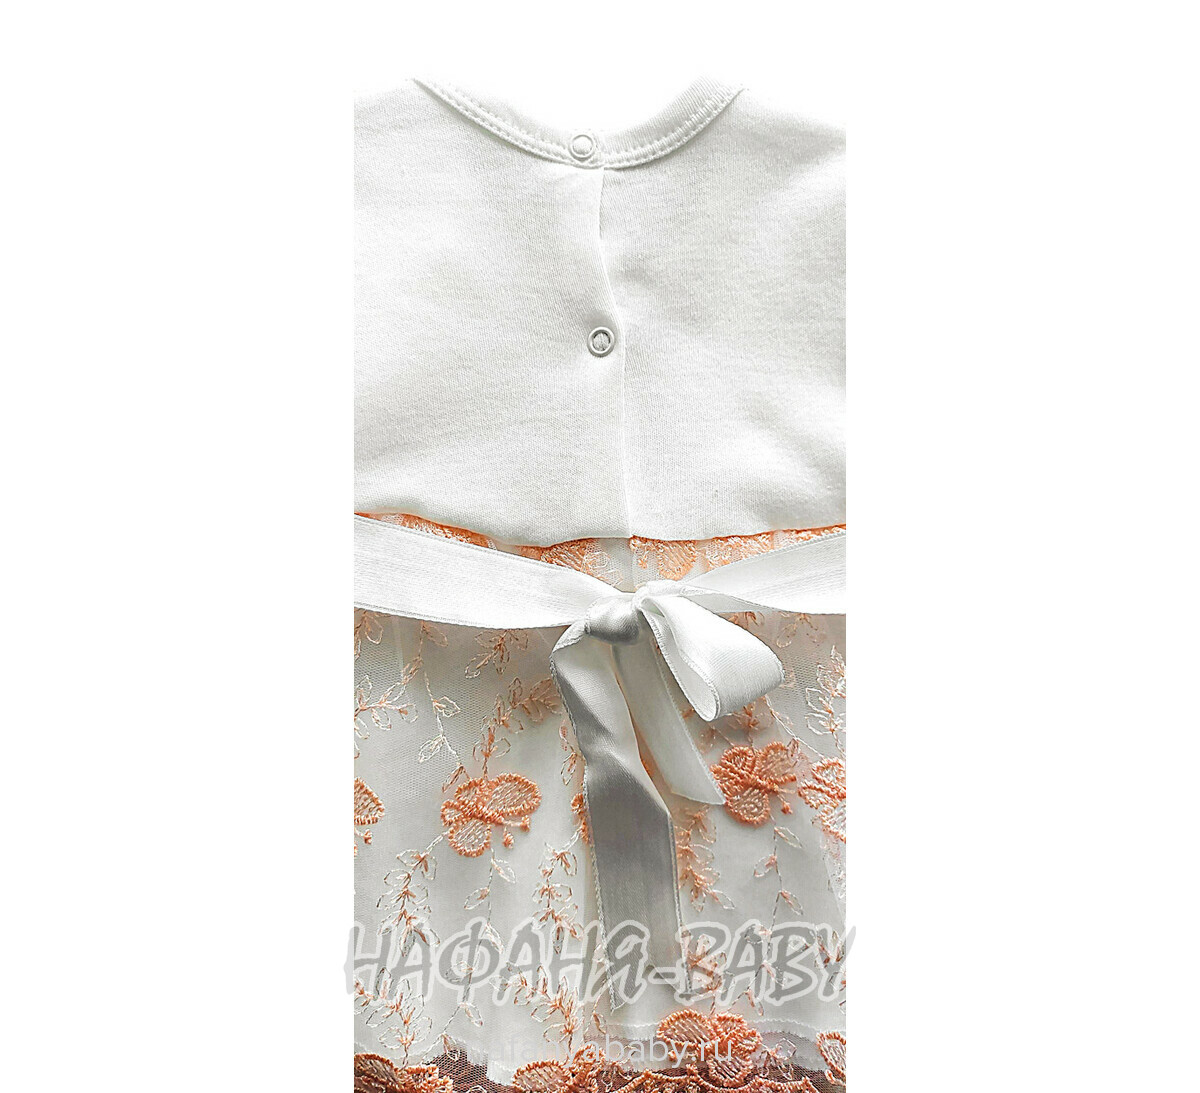 Детский костюм для новорожденных FINDIK, купить в интернет магазине Нафаня. арт: 61031, цвет молочный с персиковым